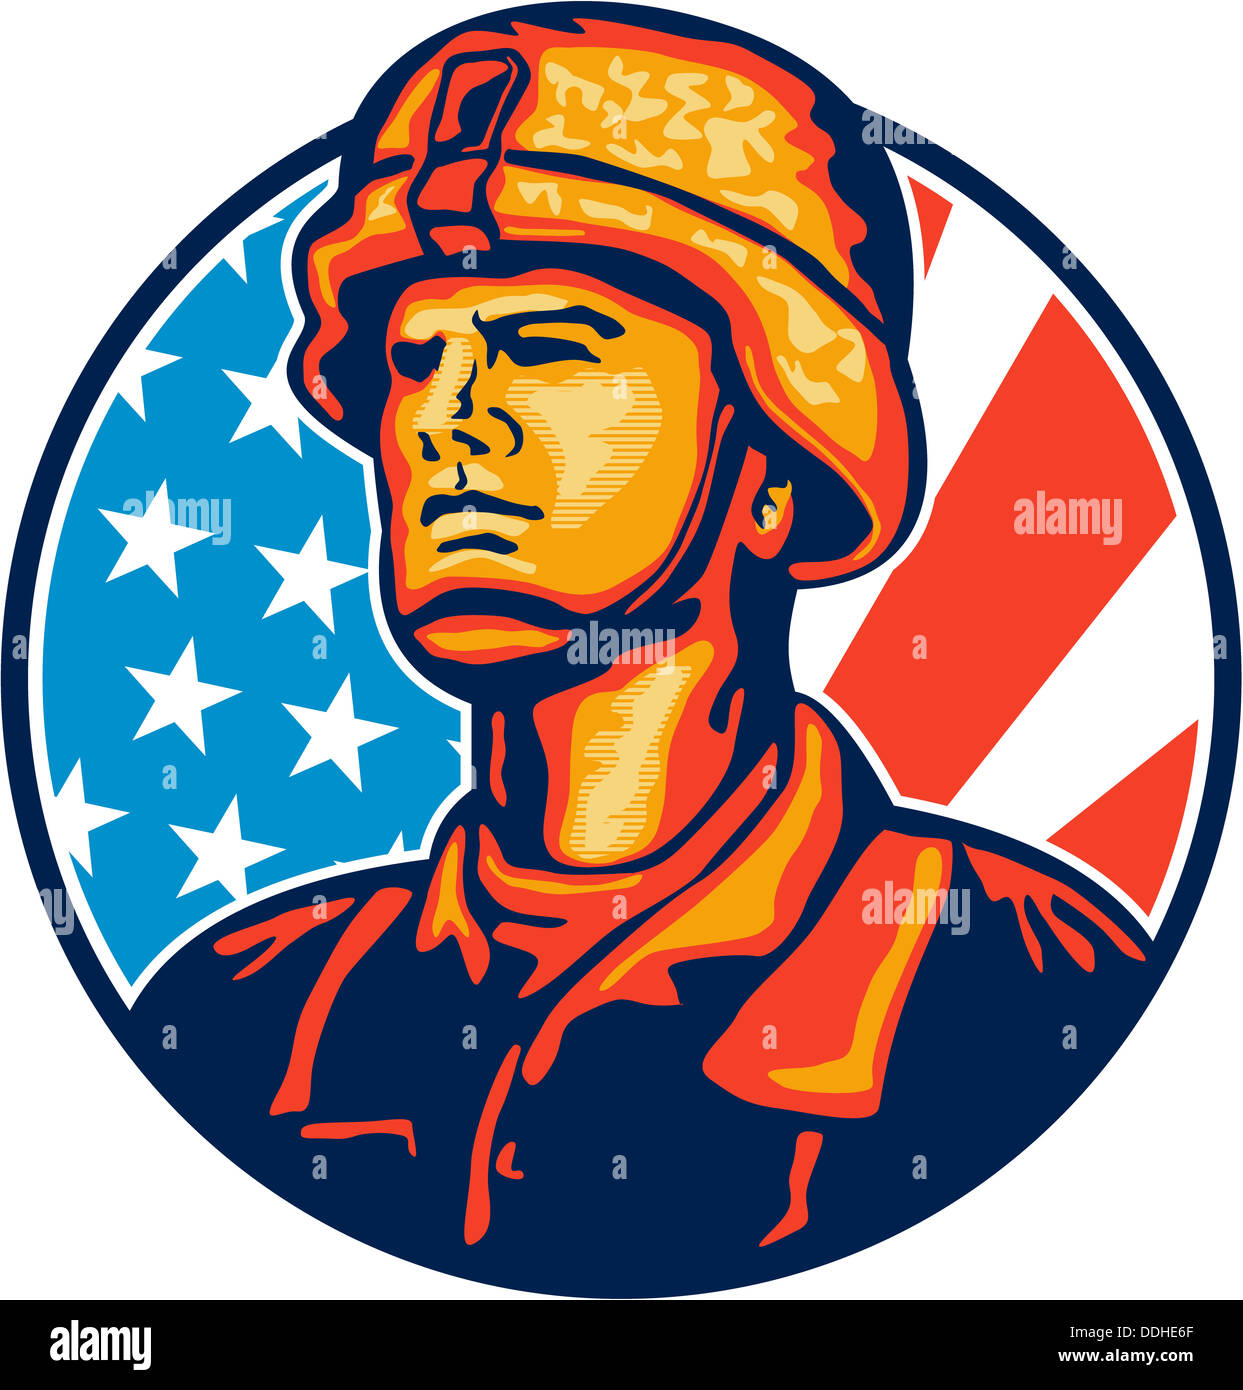 Illustrazione di un soldato americano veterani militari di guardare avanti con gli Stati Uniti a stelle e strisce bandiera in background impostata all'interno del cerchio. Foto Stock